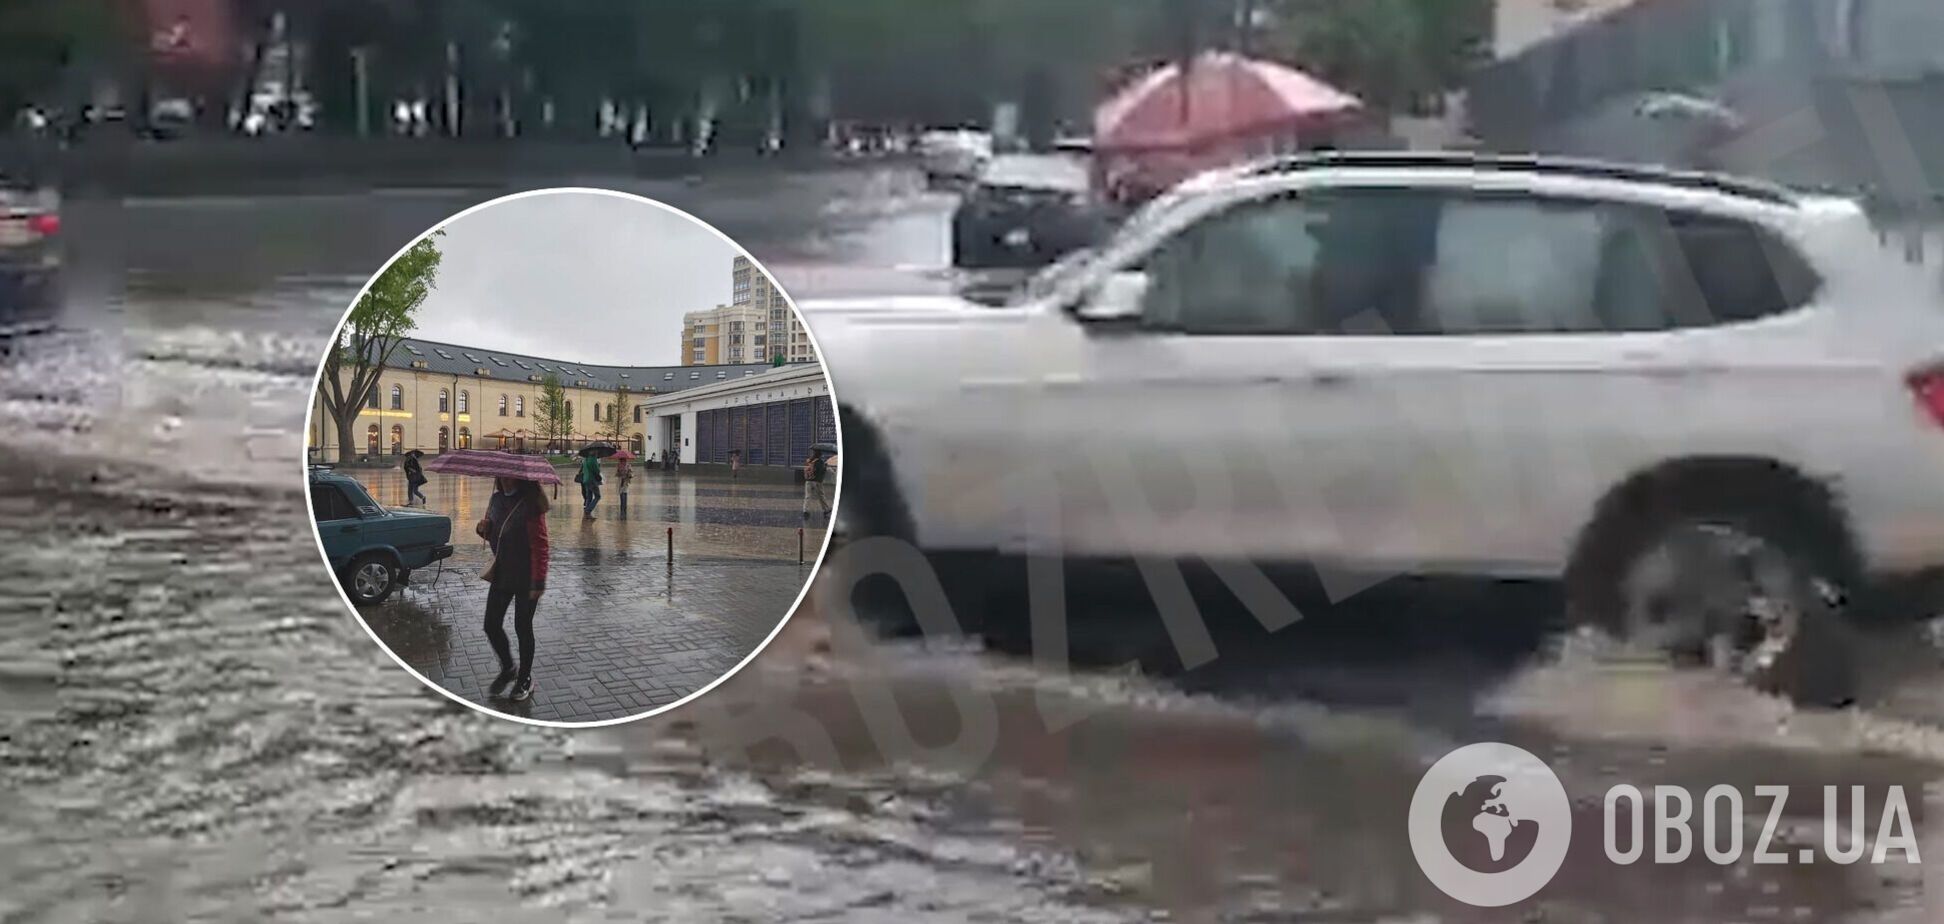 У Києві через зливи стався потоп: падали дерева, а іномарка пішла під землю. Фото, відео